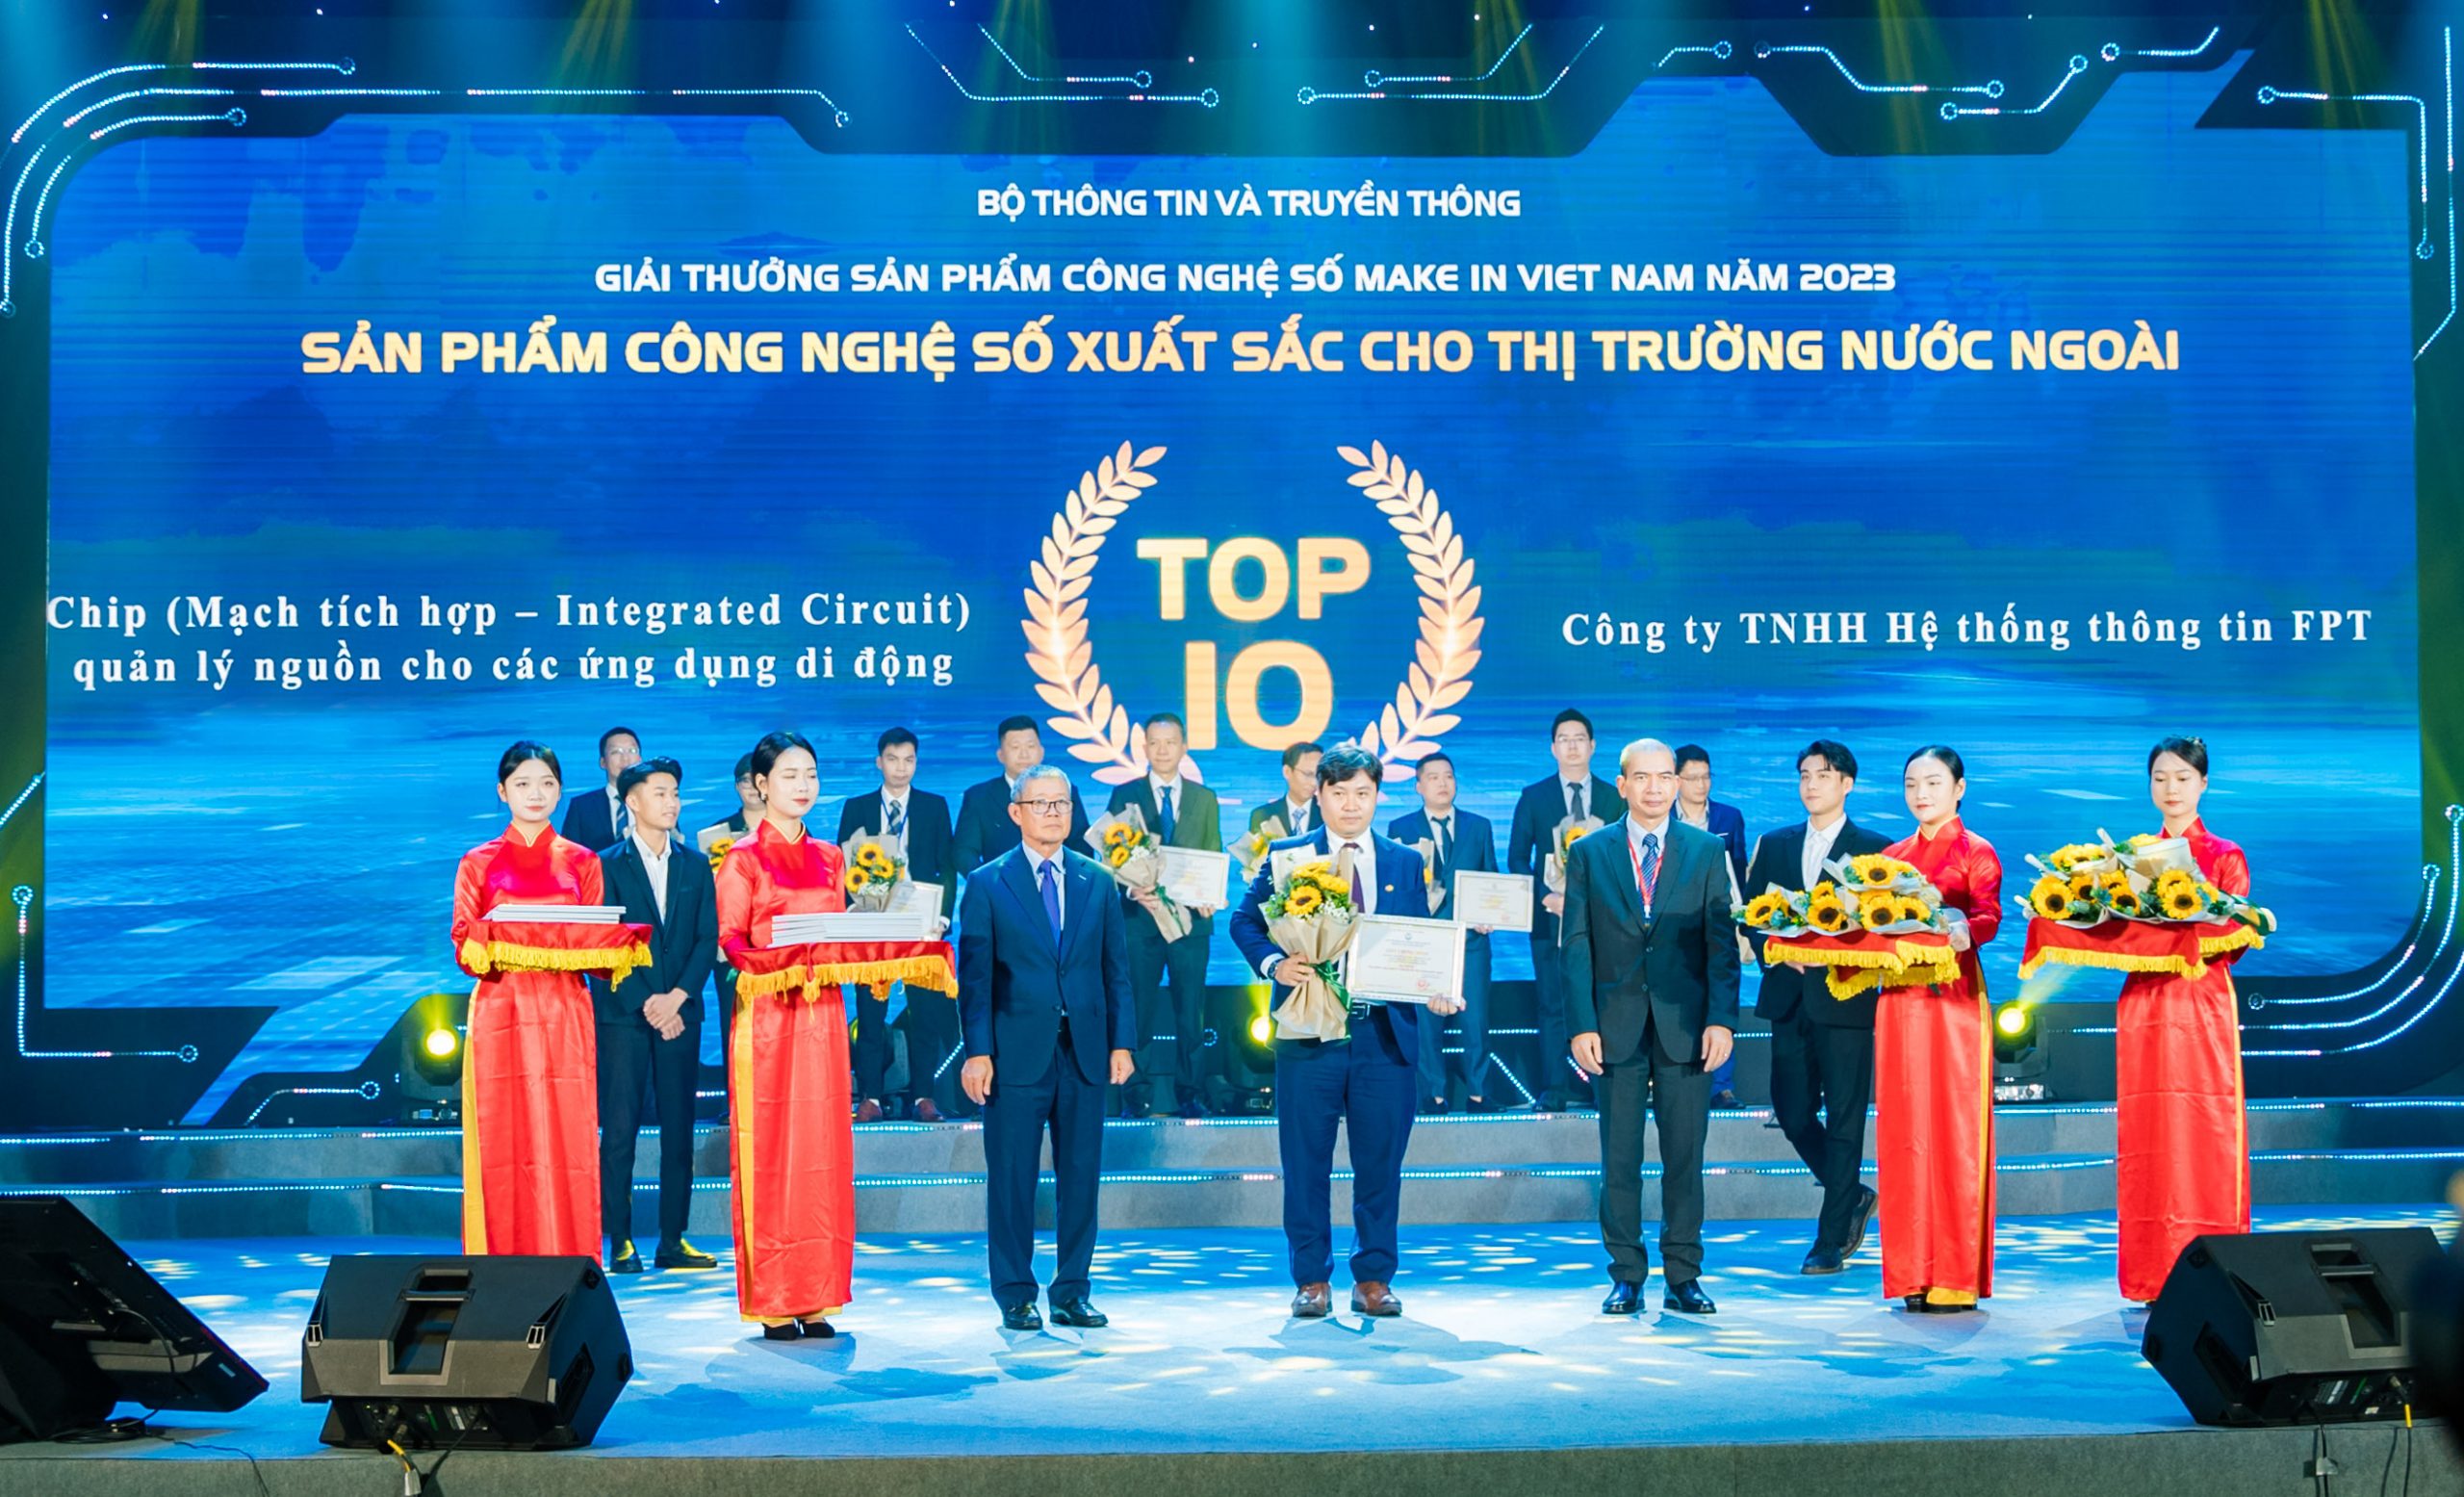 Sản phẩm Chip (Mạch tích hợp – Integrated Circuit) quản lý nguồn cho các ứng dụng di động đạt Top 10 Sản phẩm công nghệ số xuất sắc cho thị trường nước ngoài – Giải thưởng Sản phẩm công nghệ số Make in Viet Nam 2023